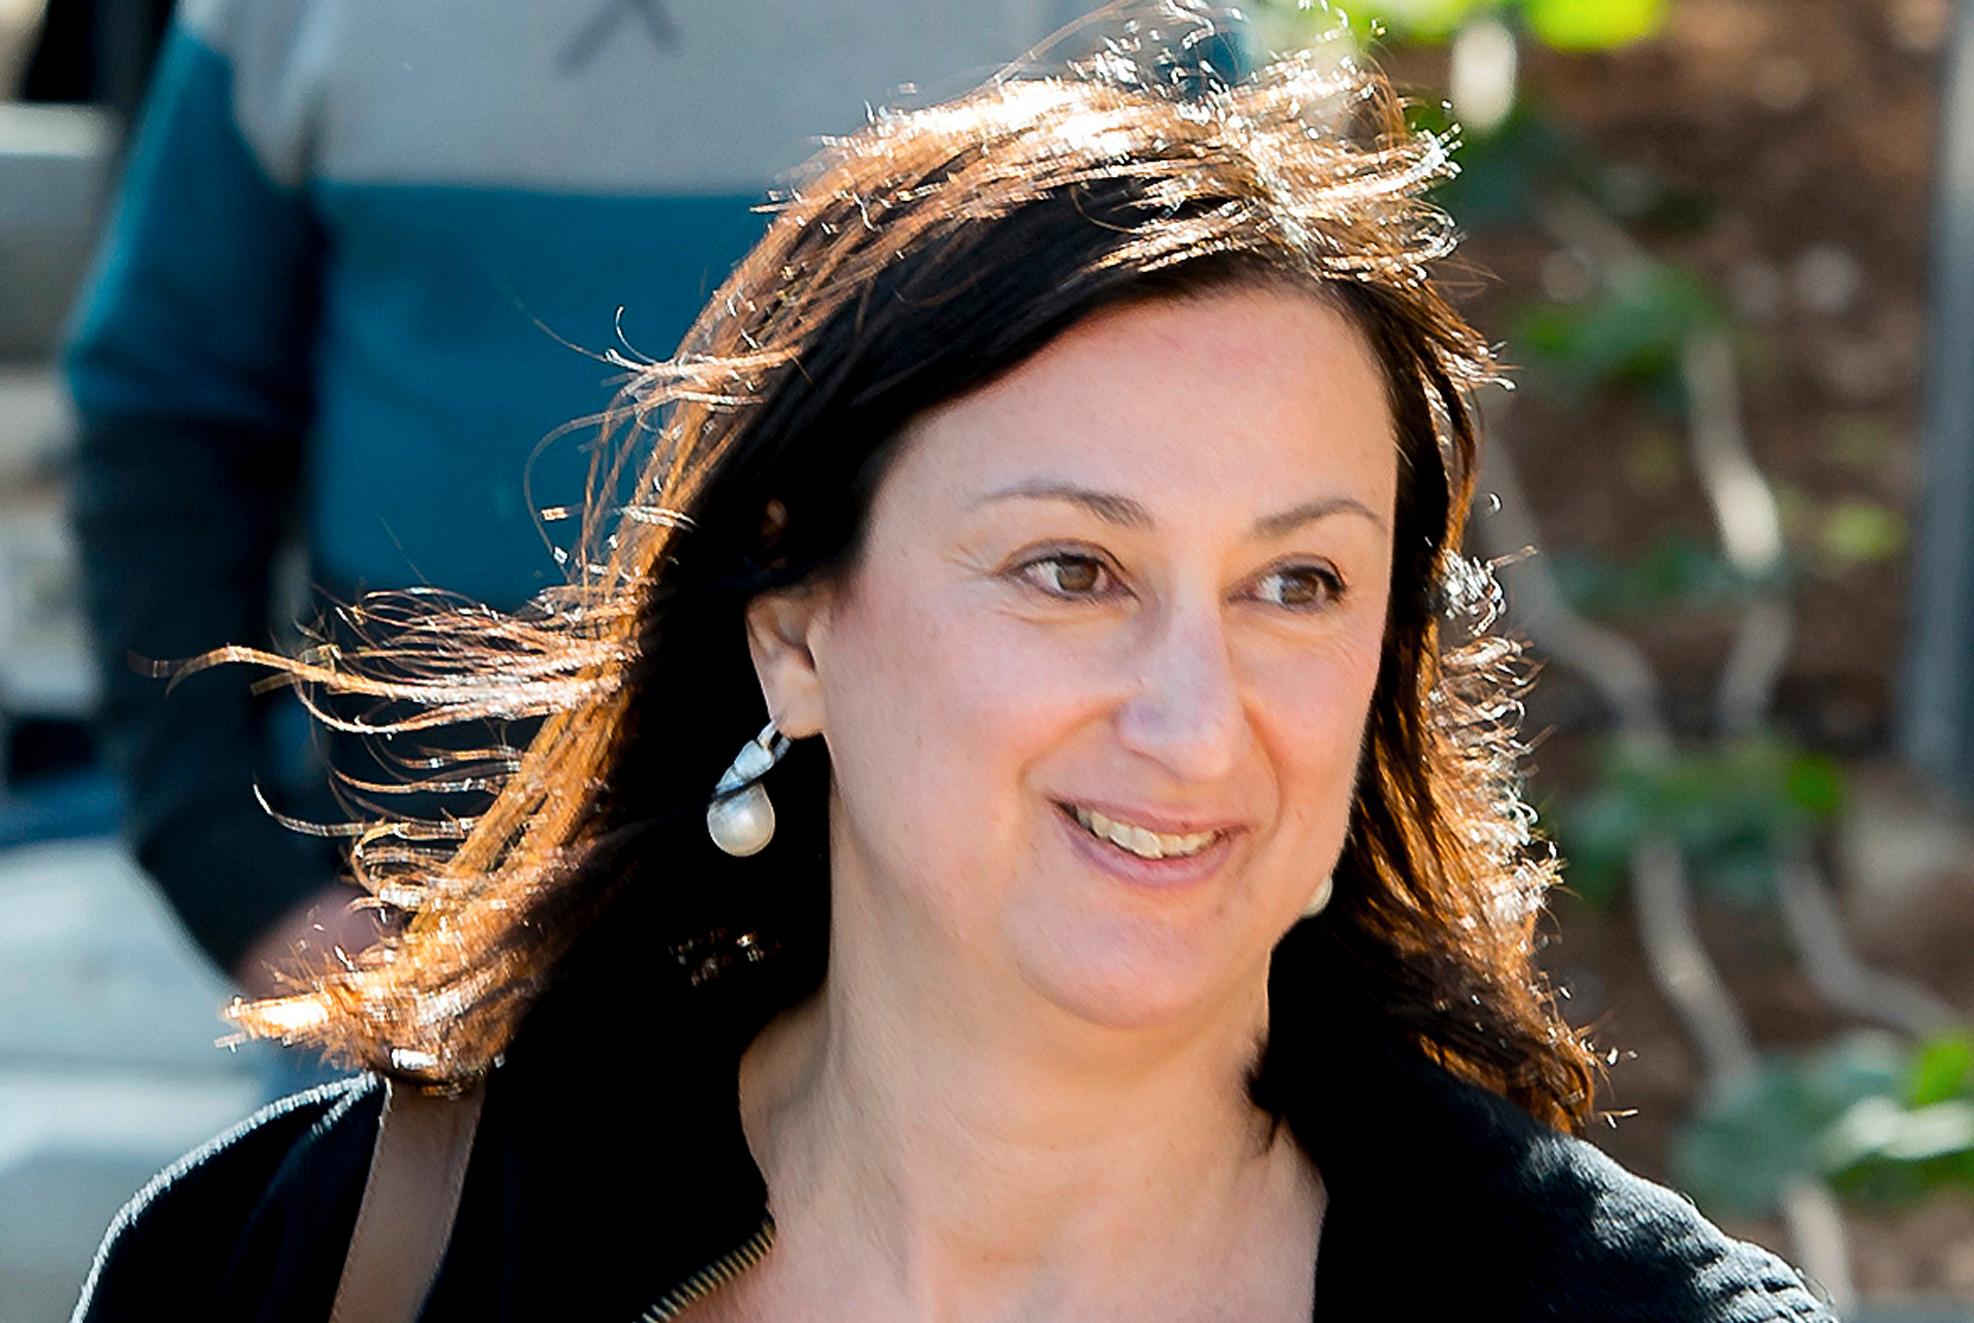 Gravejournalisten Daphne Caruana Galizia ble drept i et attentat på Malta i oktober 2017. Fredag ble de to brødrene som plasserte bilbomben, dømt til 40 års fengsel, men det er fortsatt ikke klart hvem som ga dem oppdraget. 